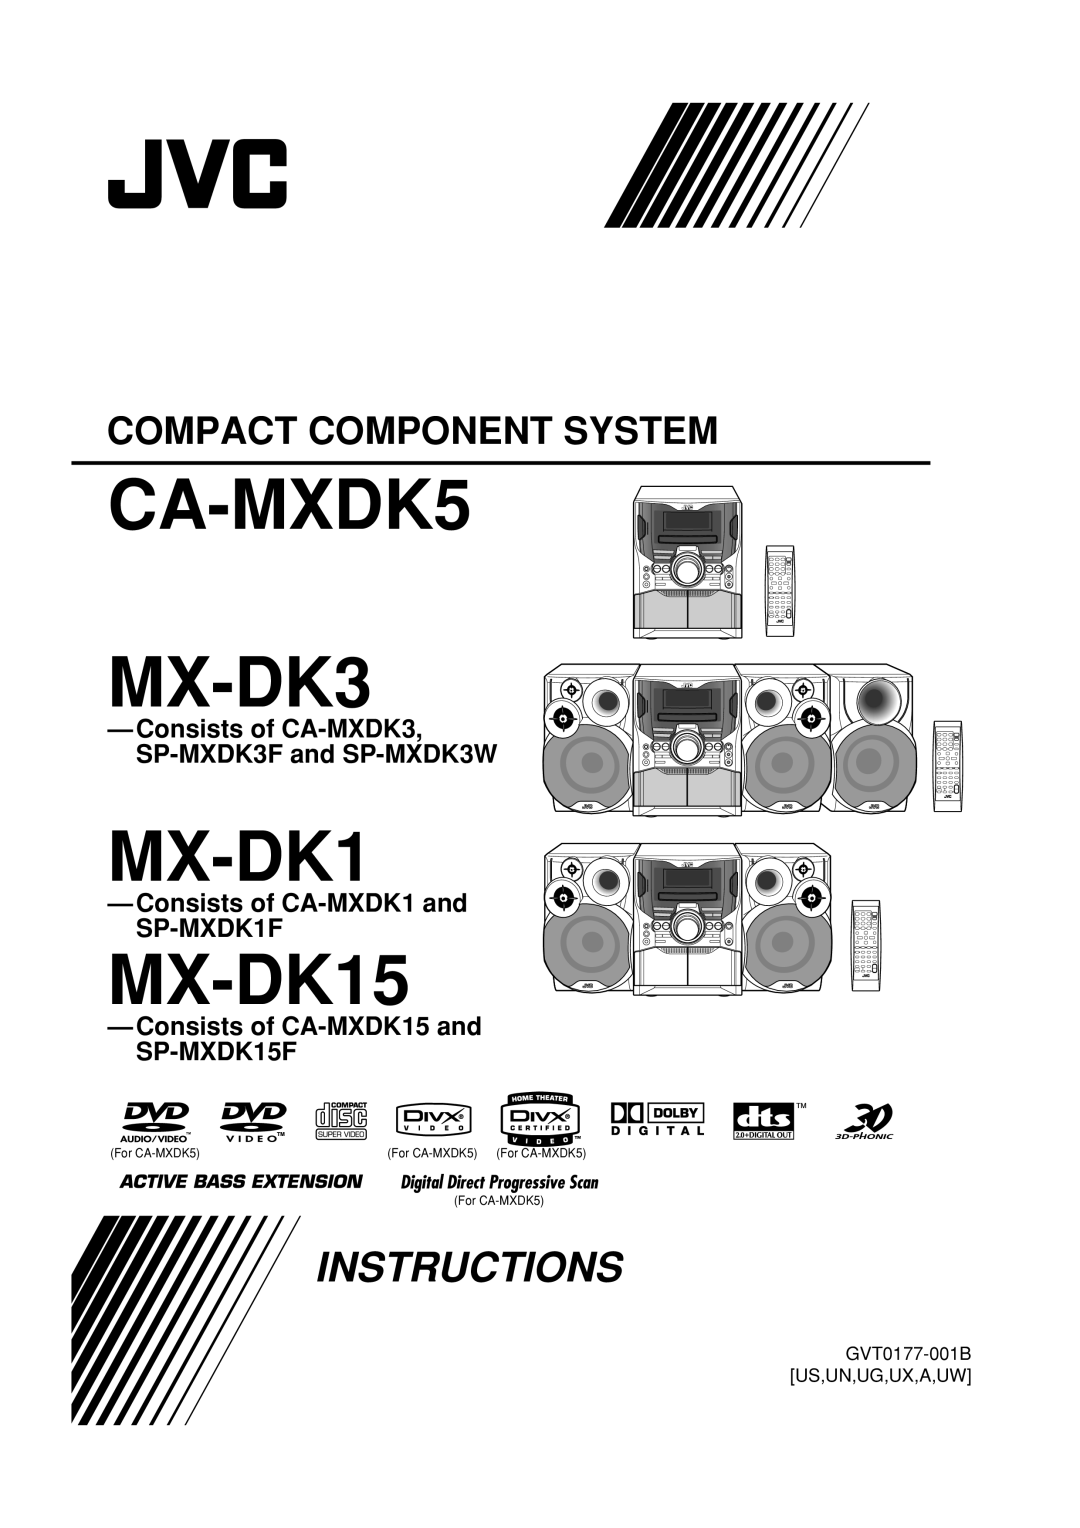 JVC MX-DK15 manual Consists of CA-MXDK3 SP-MXDK3Fand SP-MXDK3W, Consists of CA-MXDK1and SP-MXDK1F, CA-MXDK5 MX-DK3 